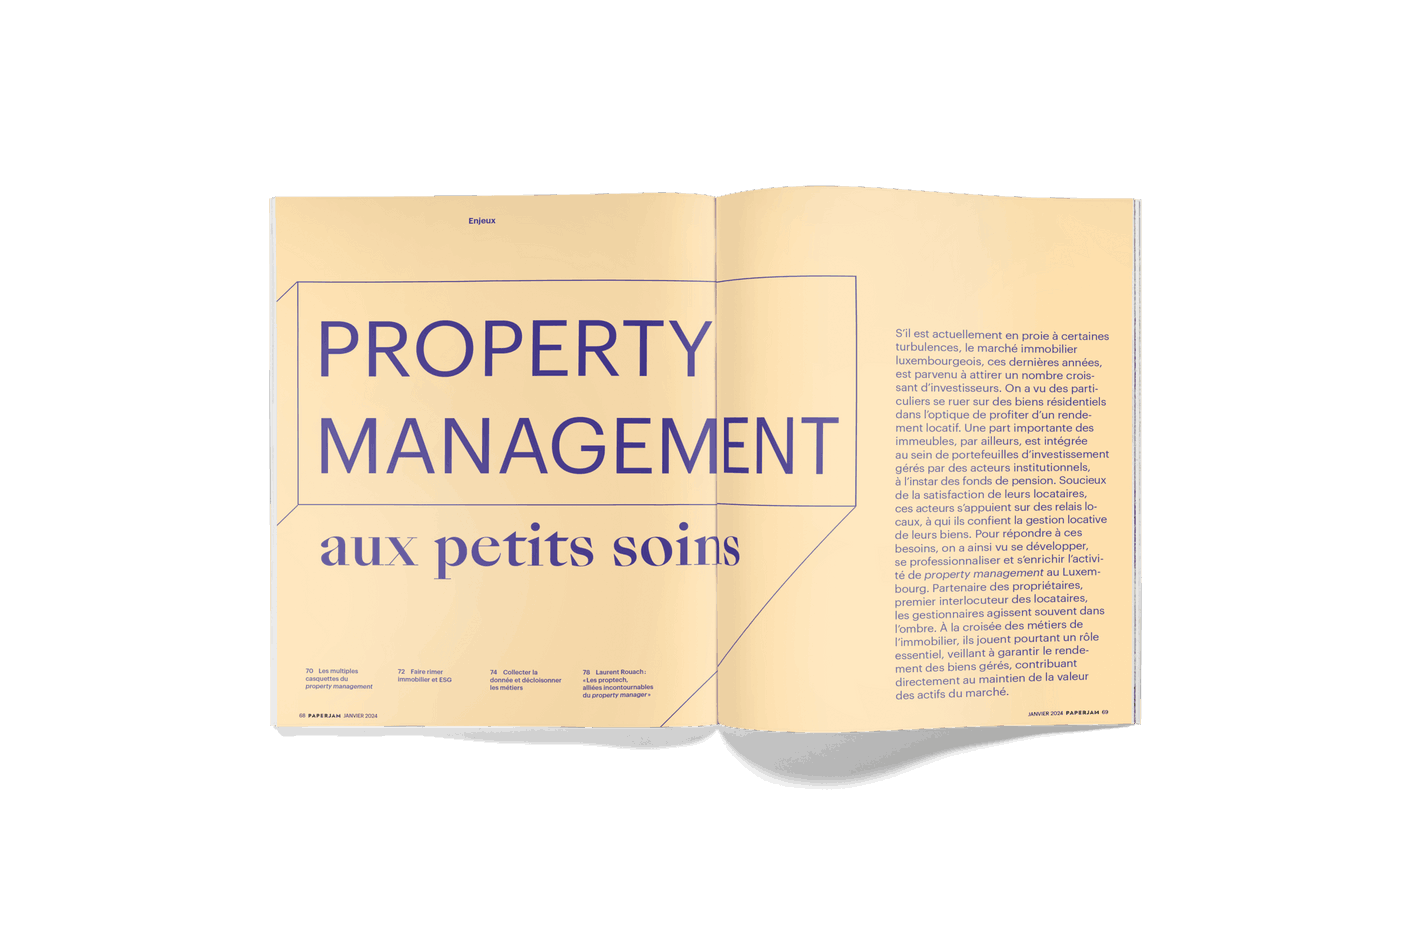 Dossier Enjeux sur le property management. (Photo: Maison Moderne)